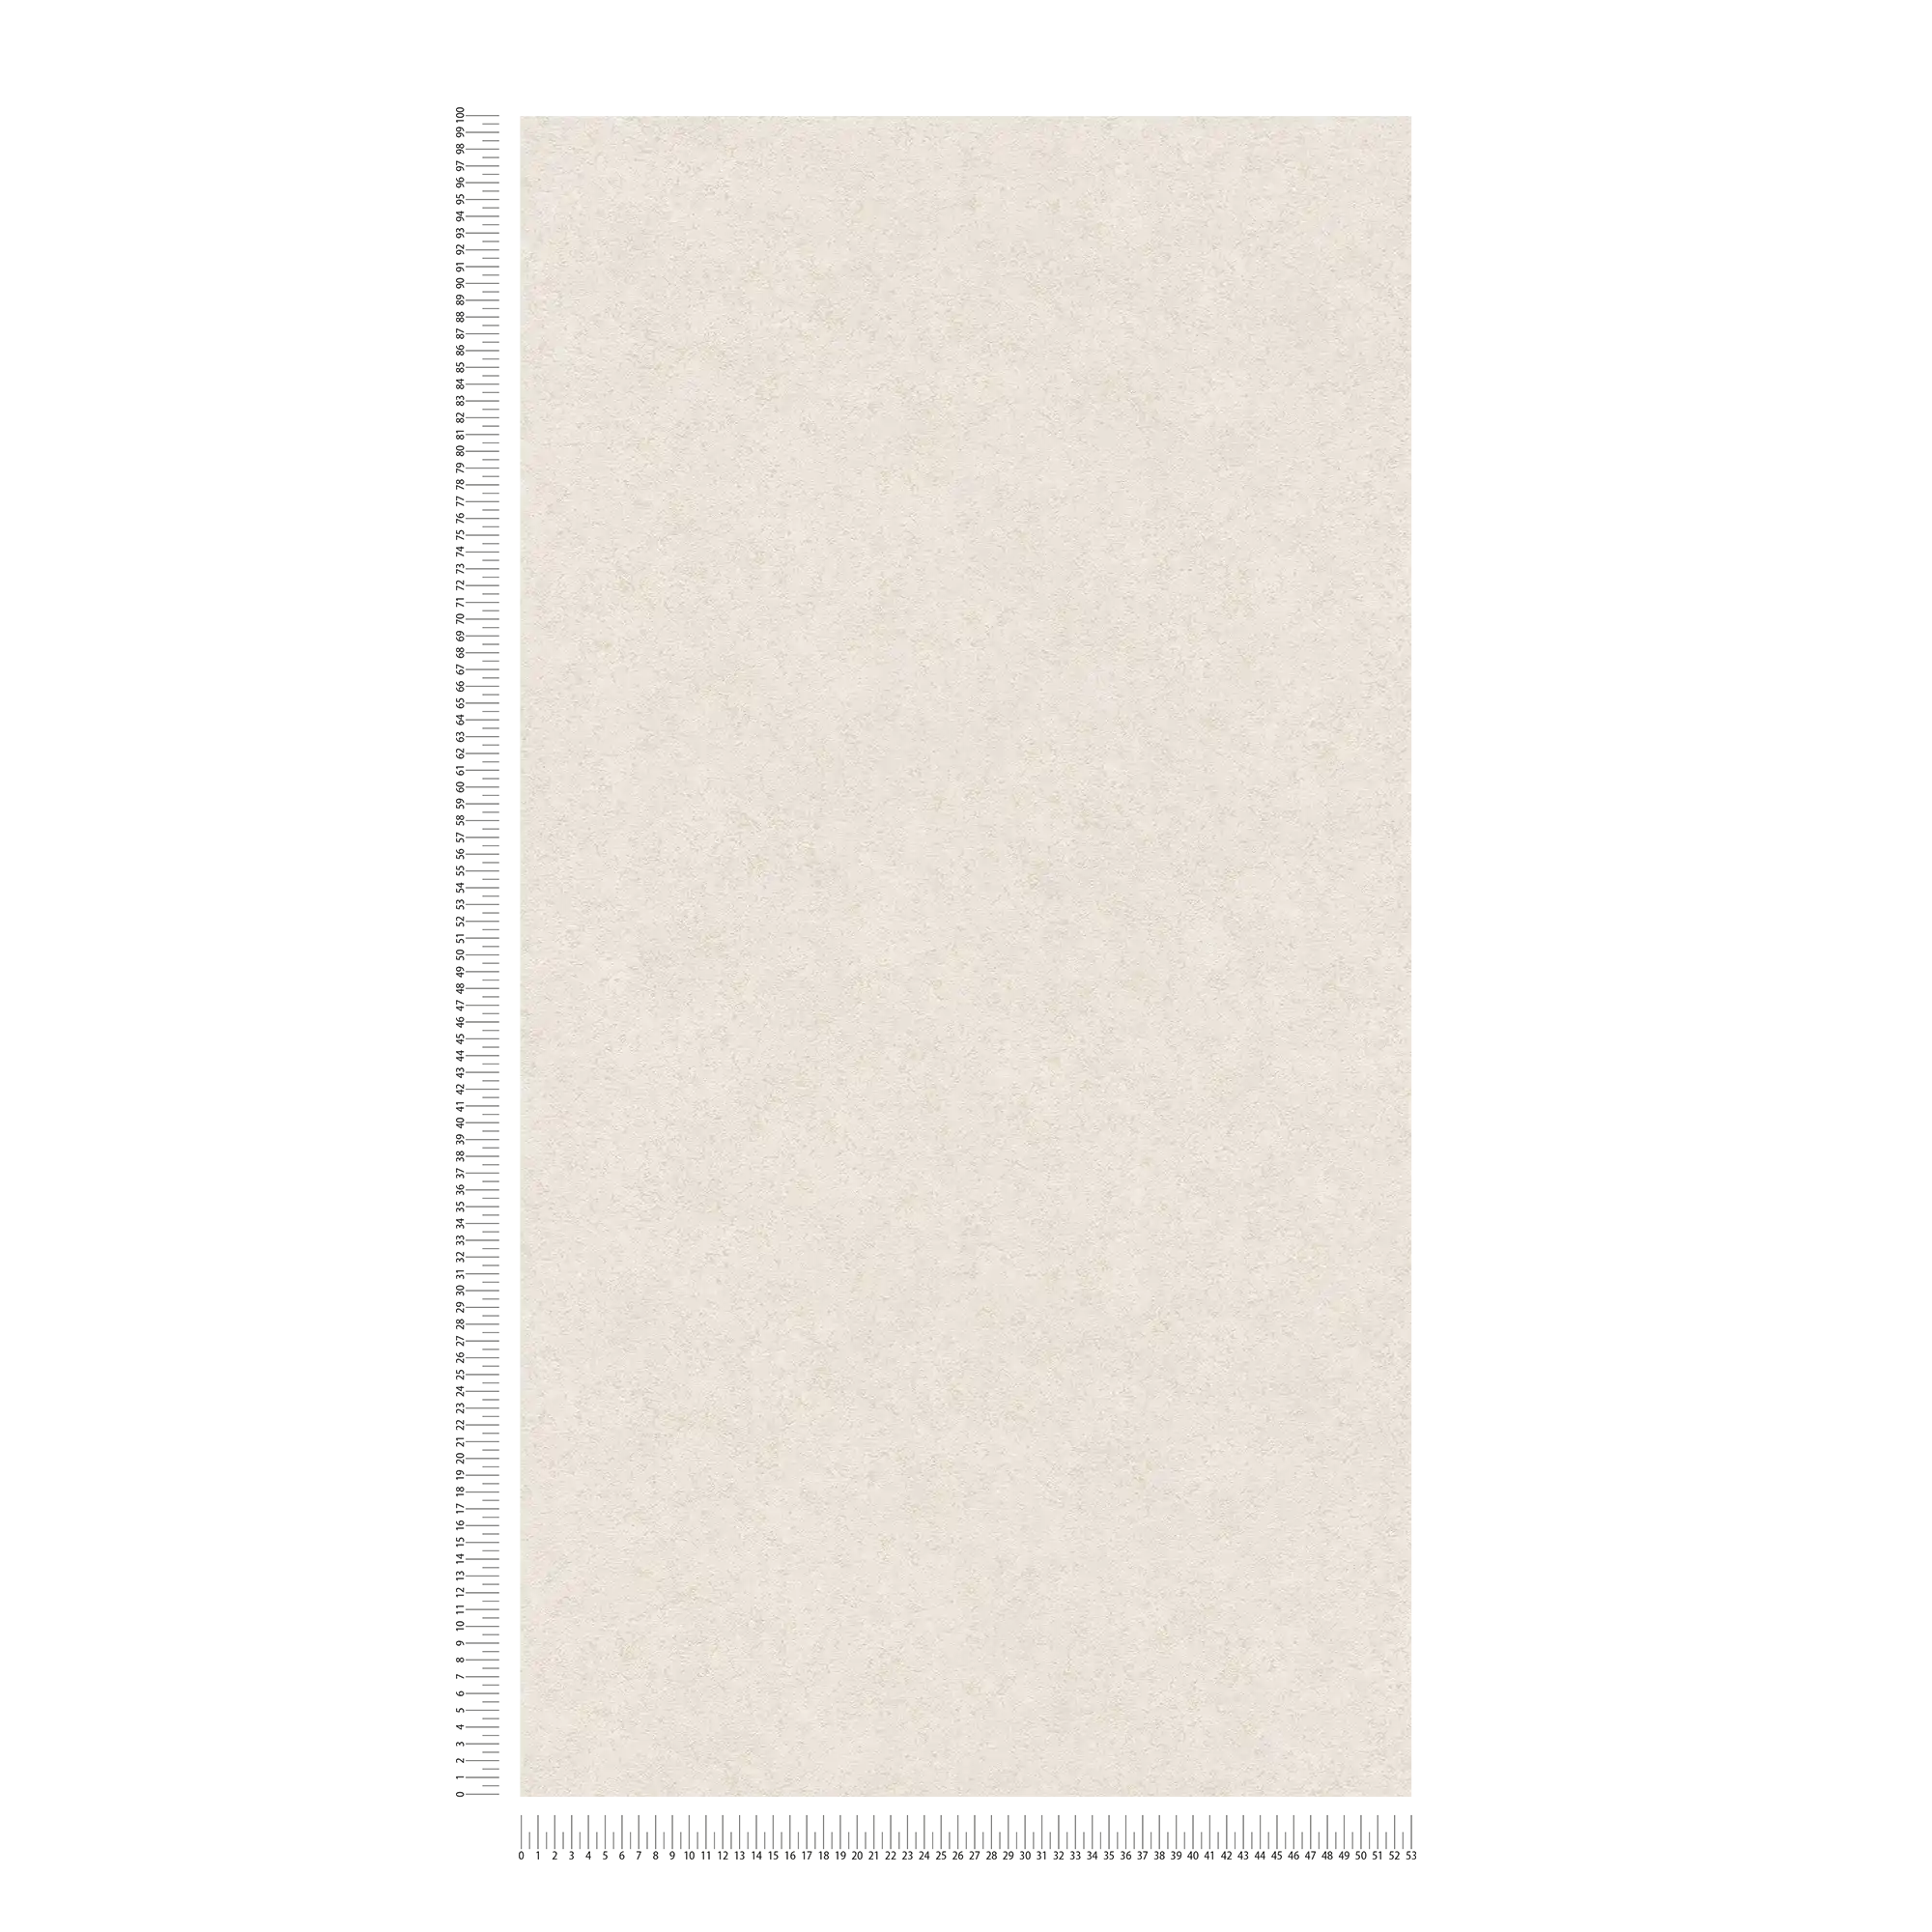             Carta da parati in tessuto non tessuto opaco con effetto intonaco - beige, bianco
        